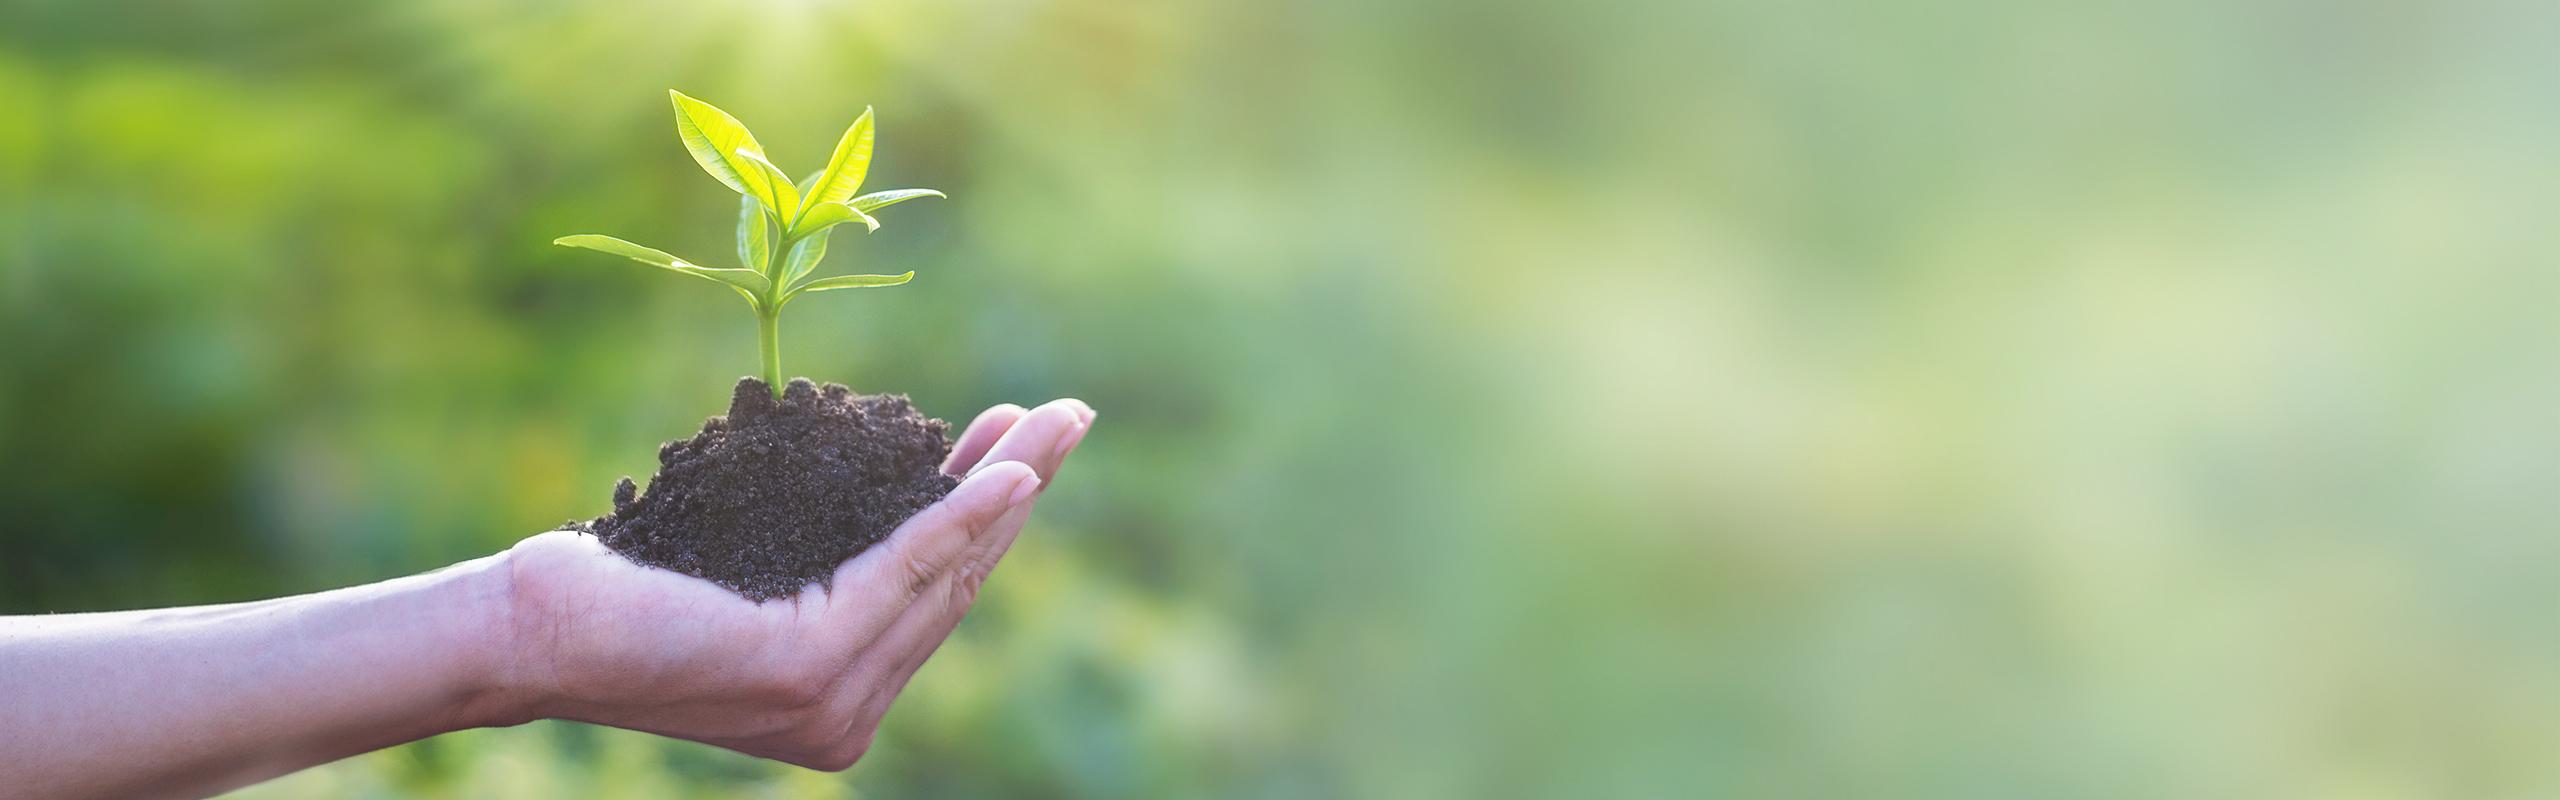 BRITA Nachhaltigkeit Hand hält Erde mit Pflanze